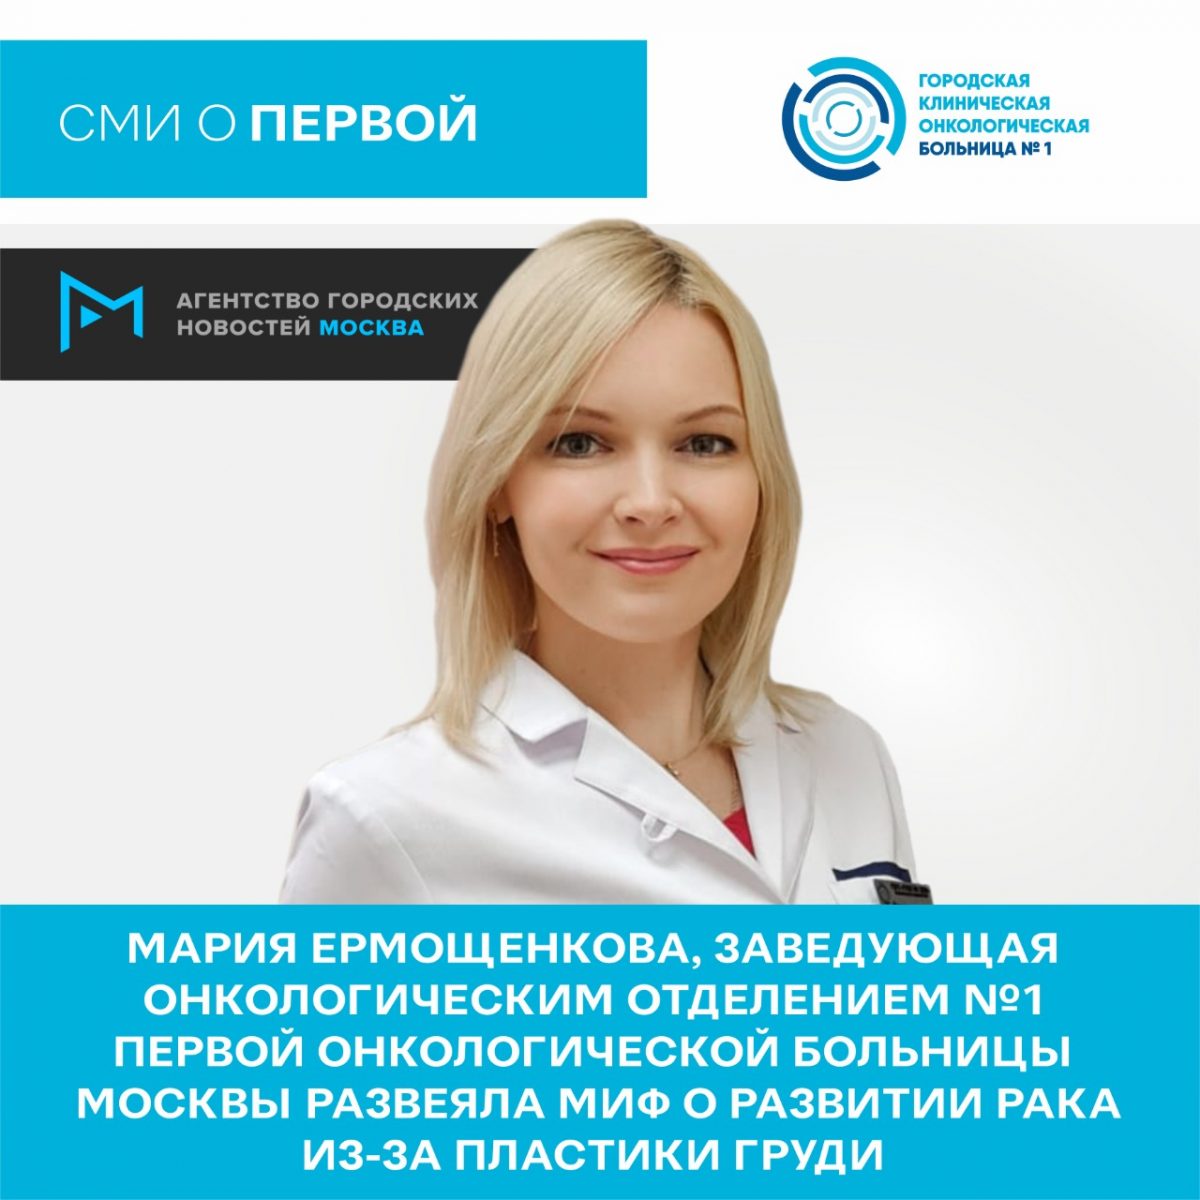 Мария Ермощенкова, заведующая онкологическим отделением №1 Первой онкологической больницы Москвы развеяла миф о развитии рака из-за пластики груди